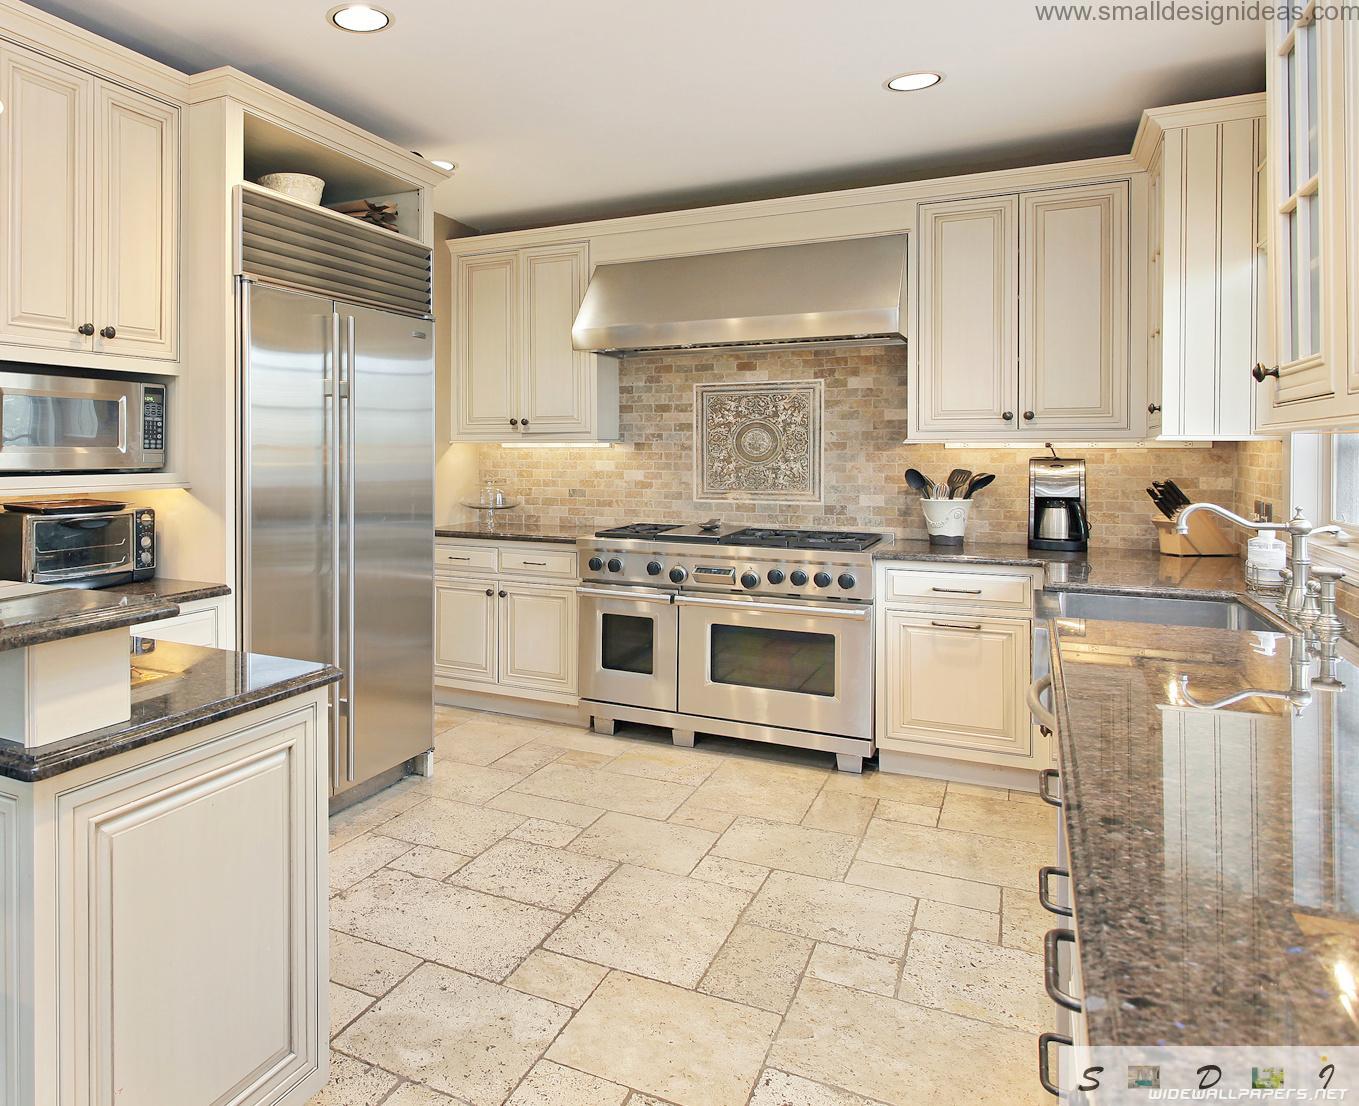 private house kitchen design